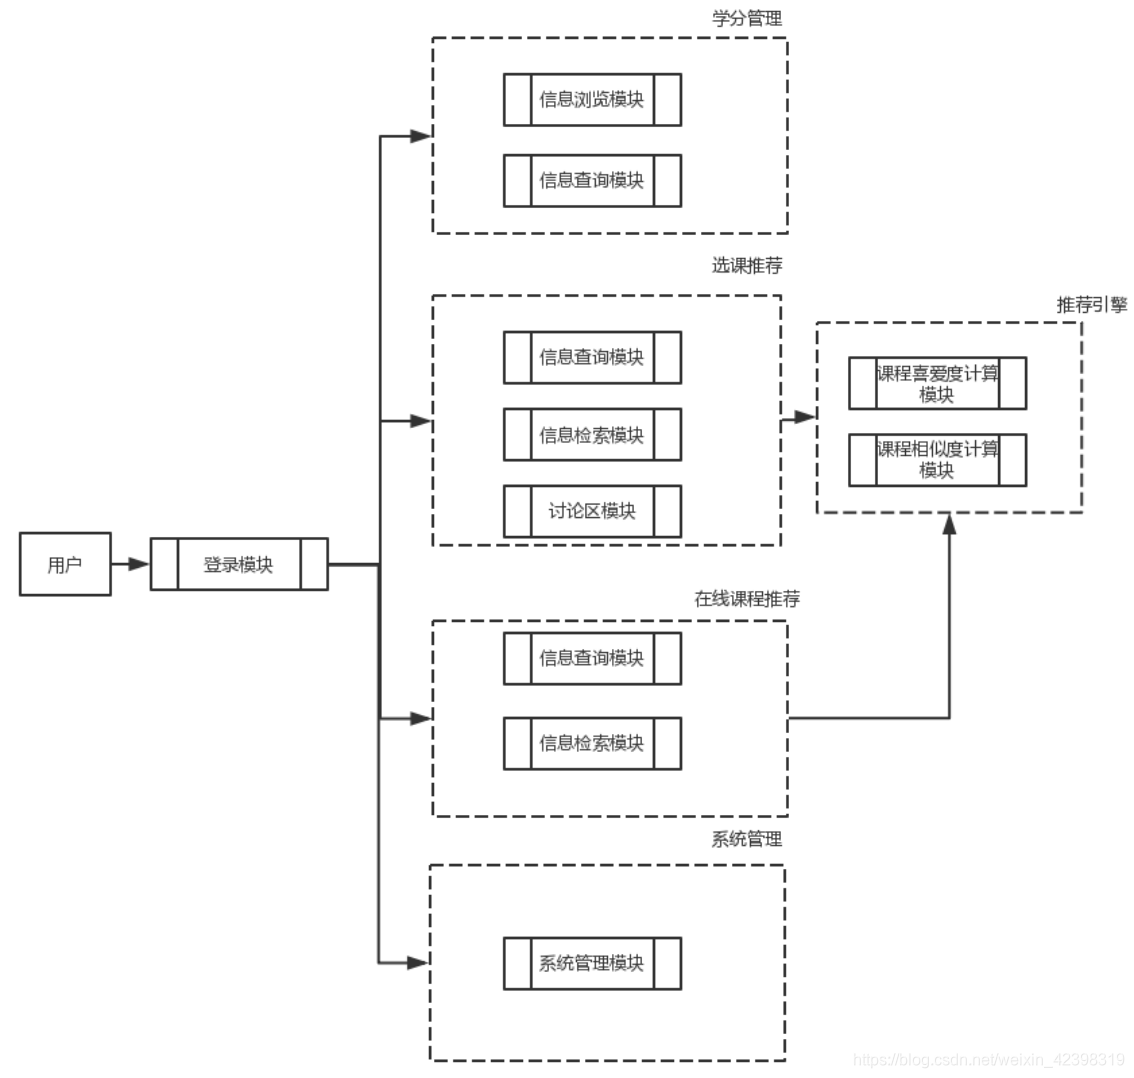 图8 系统功能模块结构图